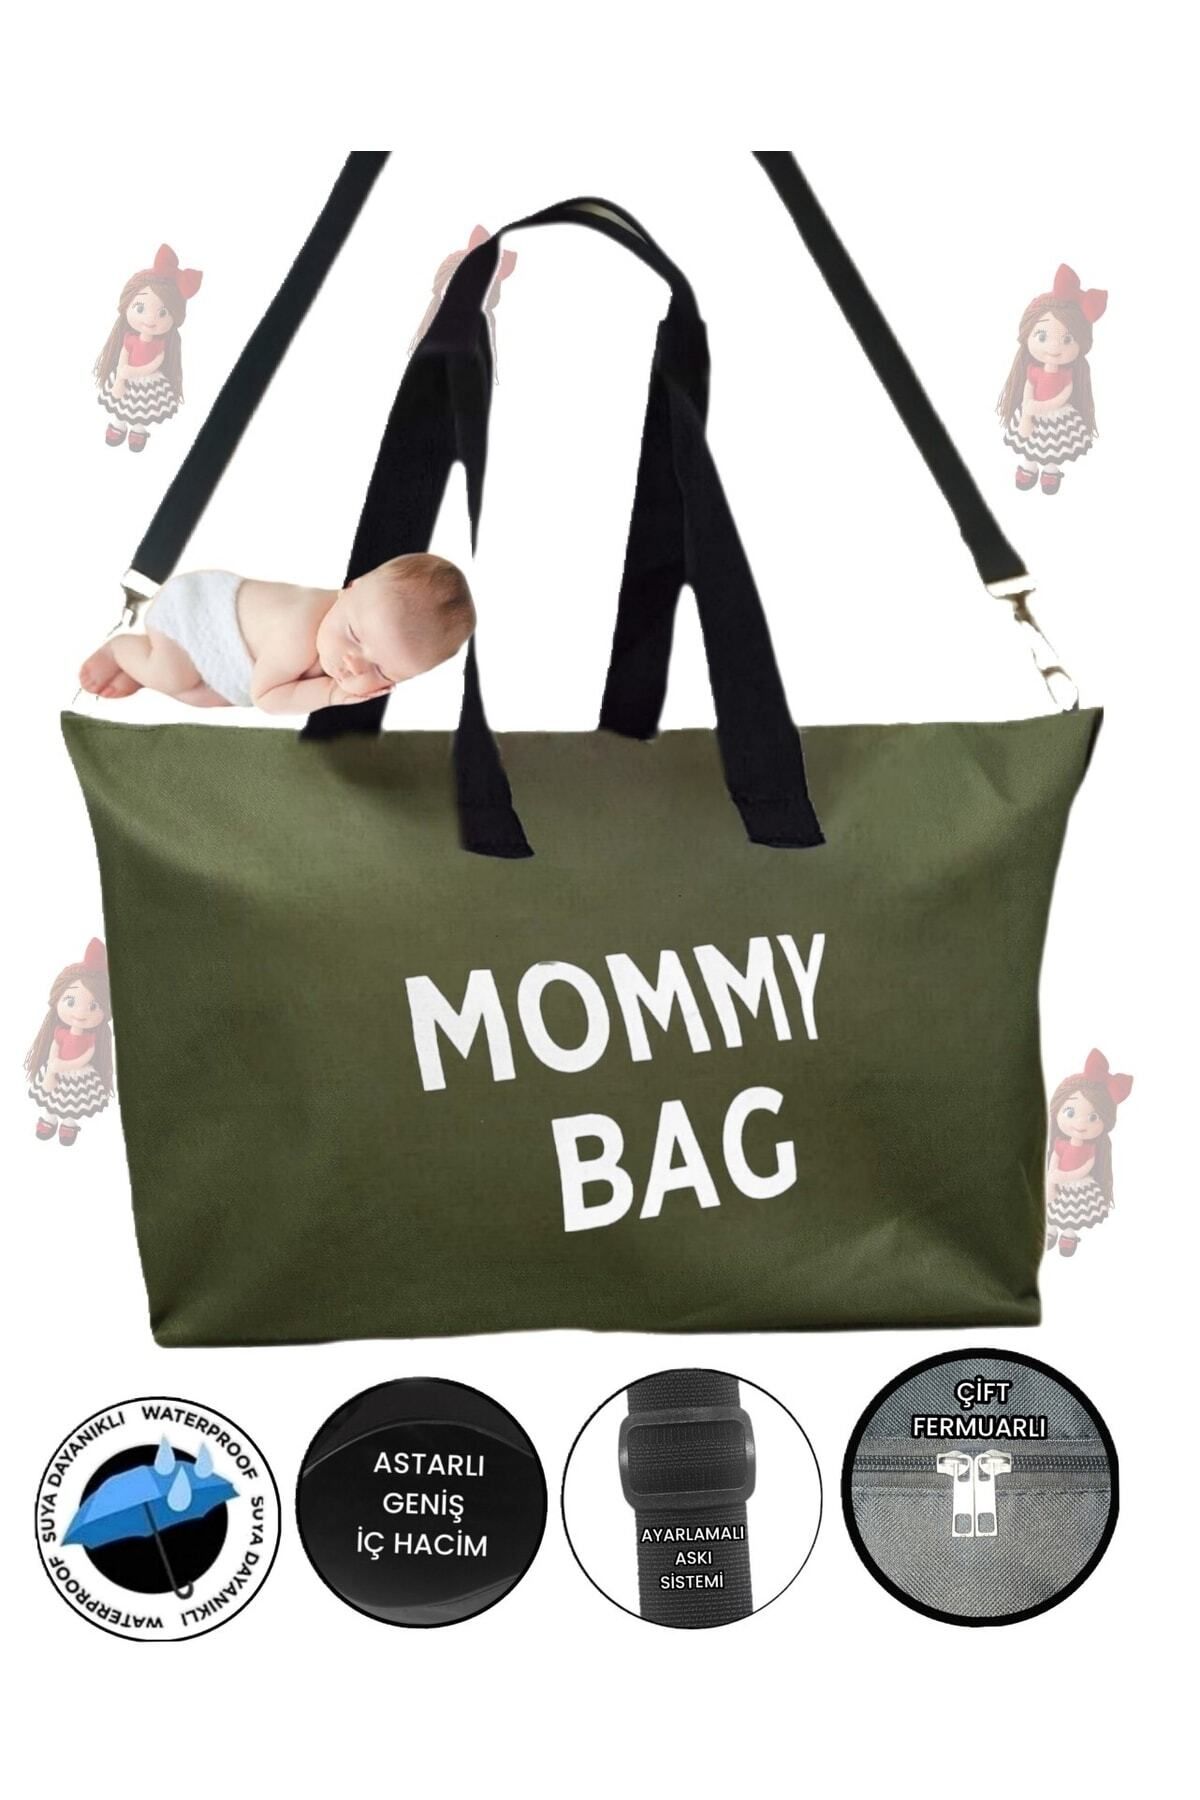 SEVBAGS Mommy Bag Baskılı Bebek Bakım Çantası